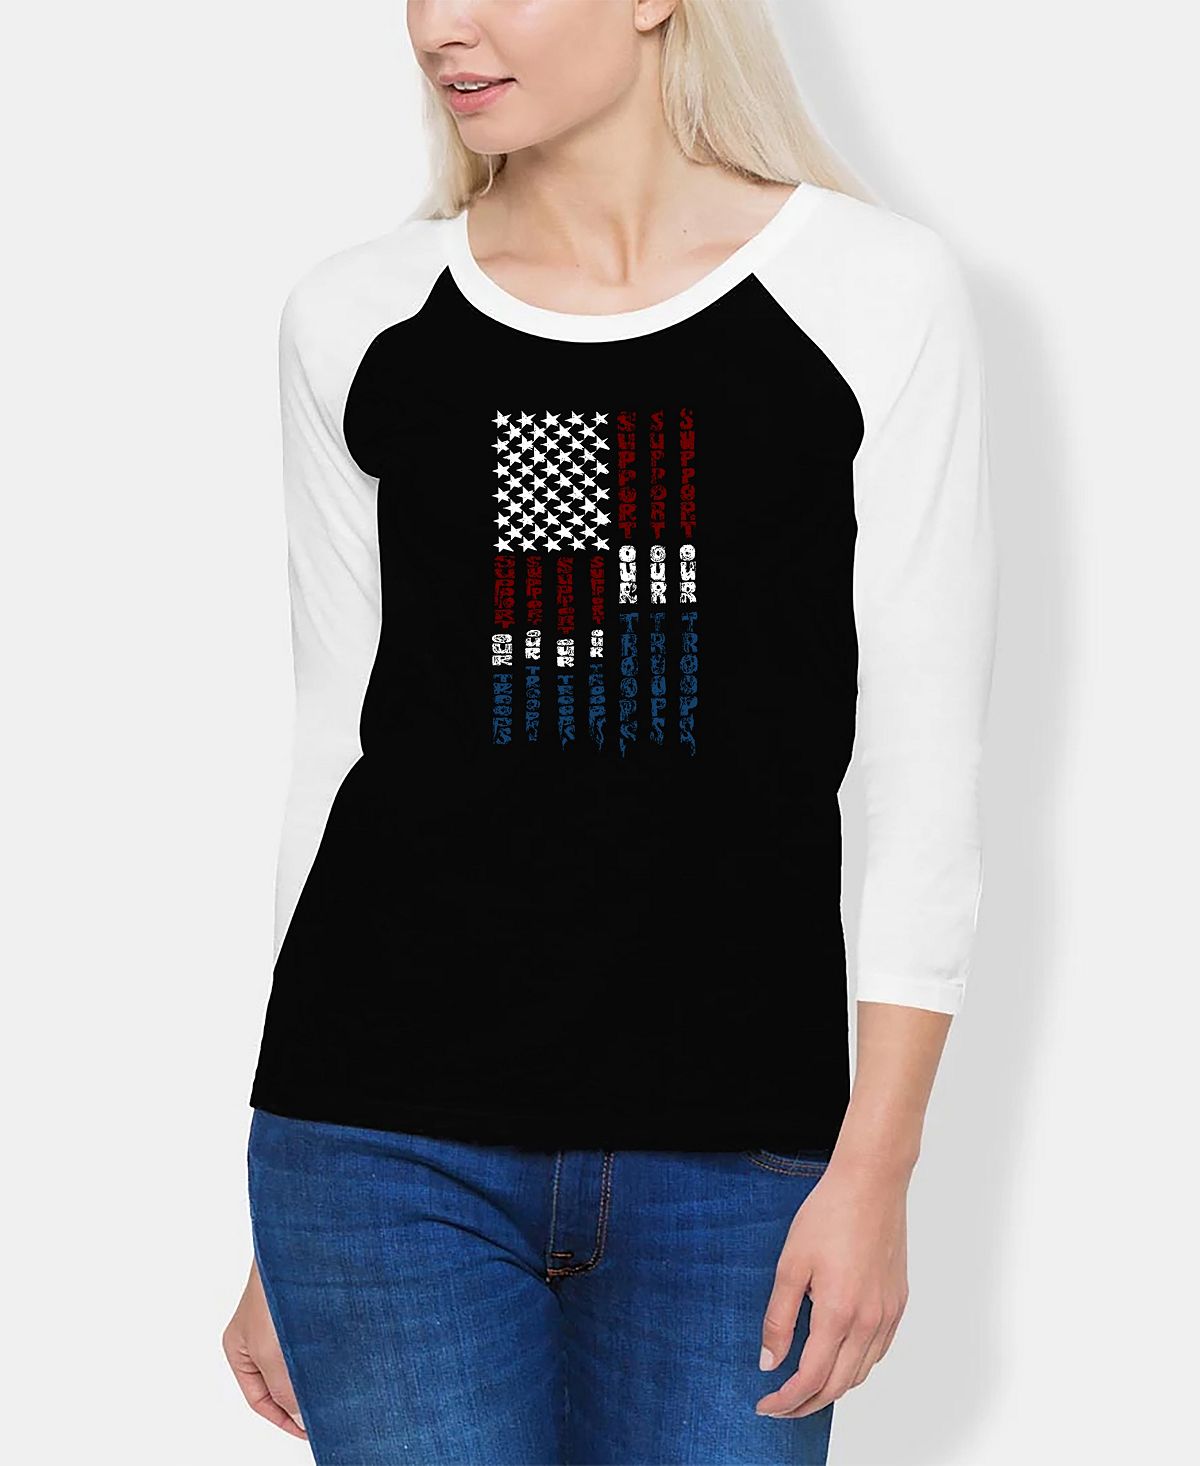 Женская футболка реглан с надписью «Поддержите наши войска» LA Pop Art